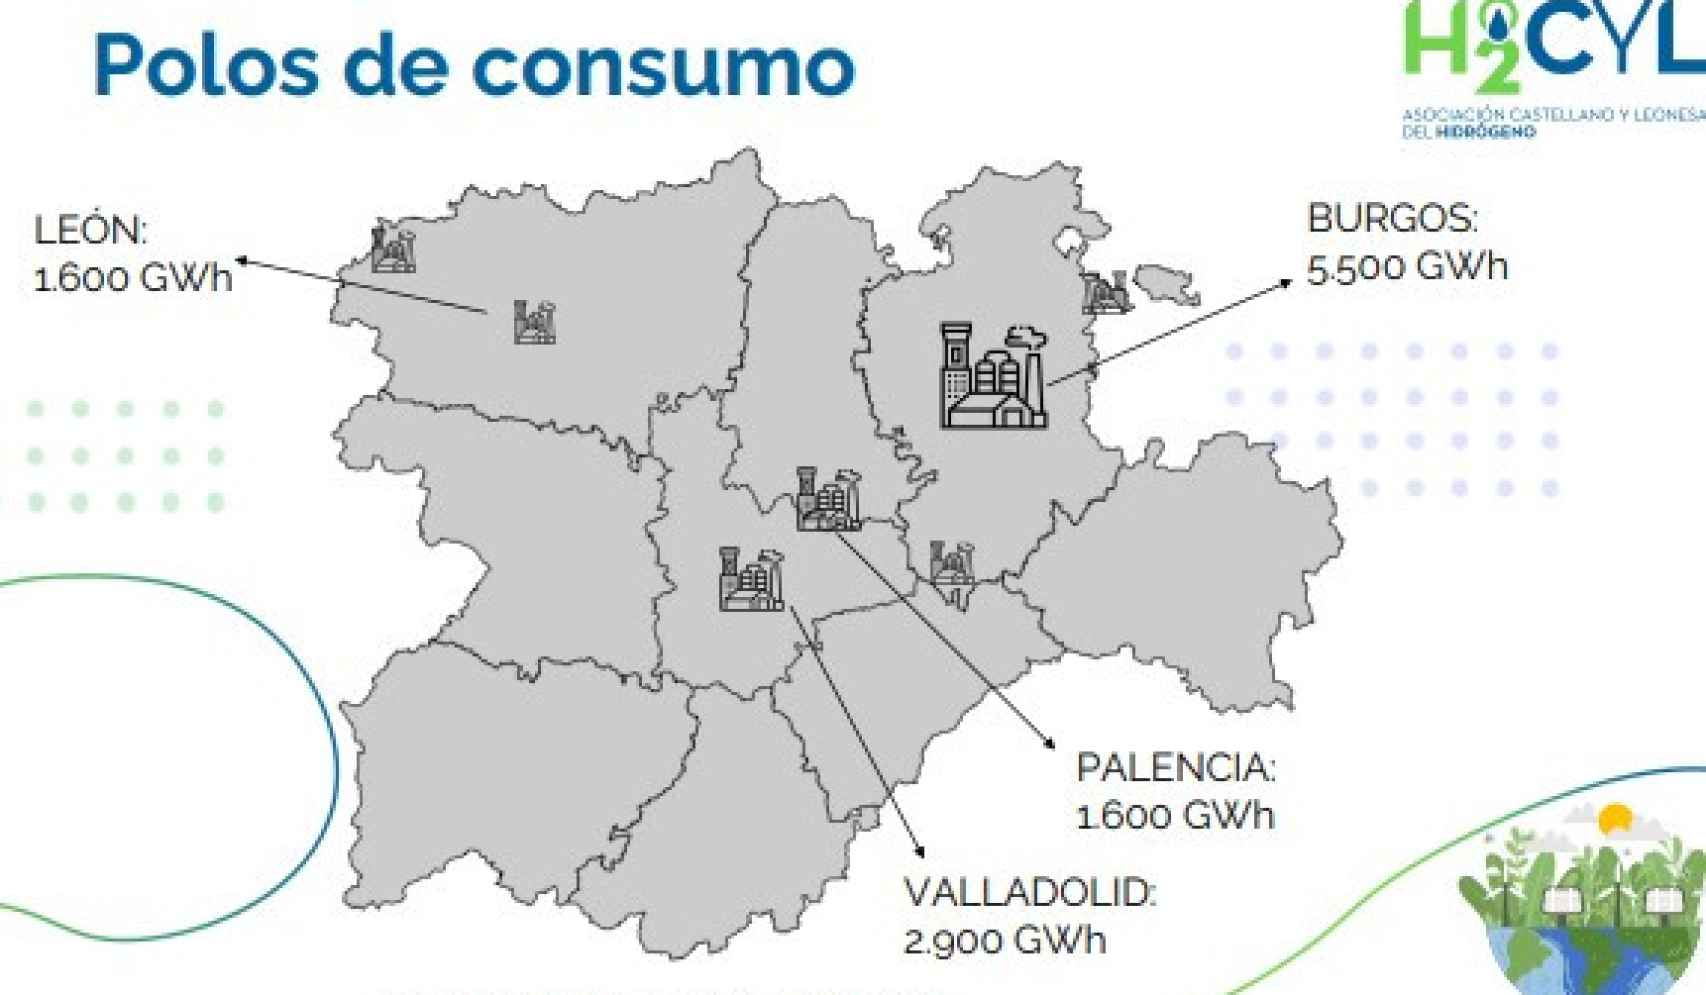 Mapa de los principales polos de consumo industrial de Castilla y León.